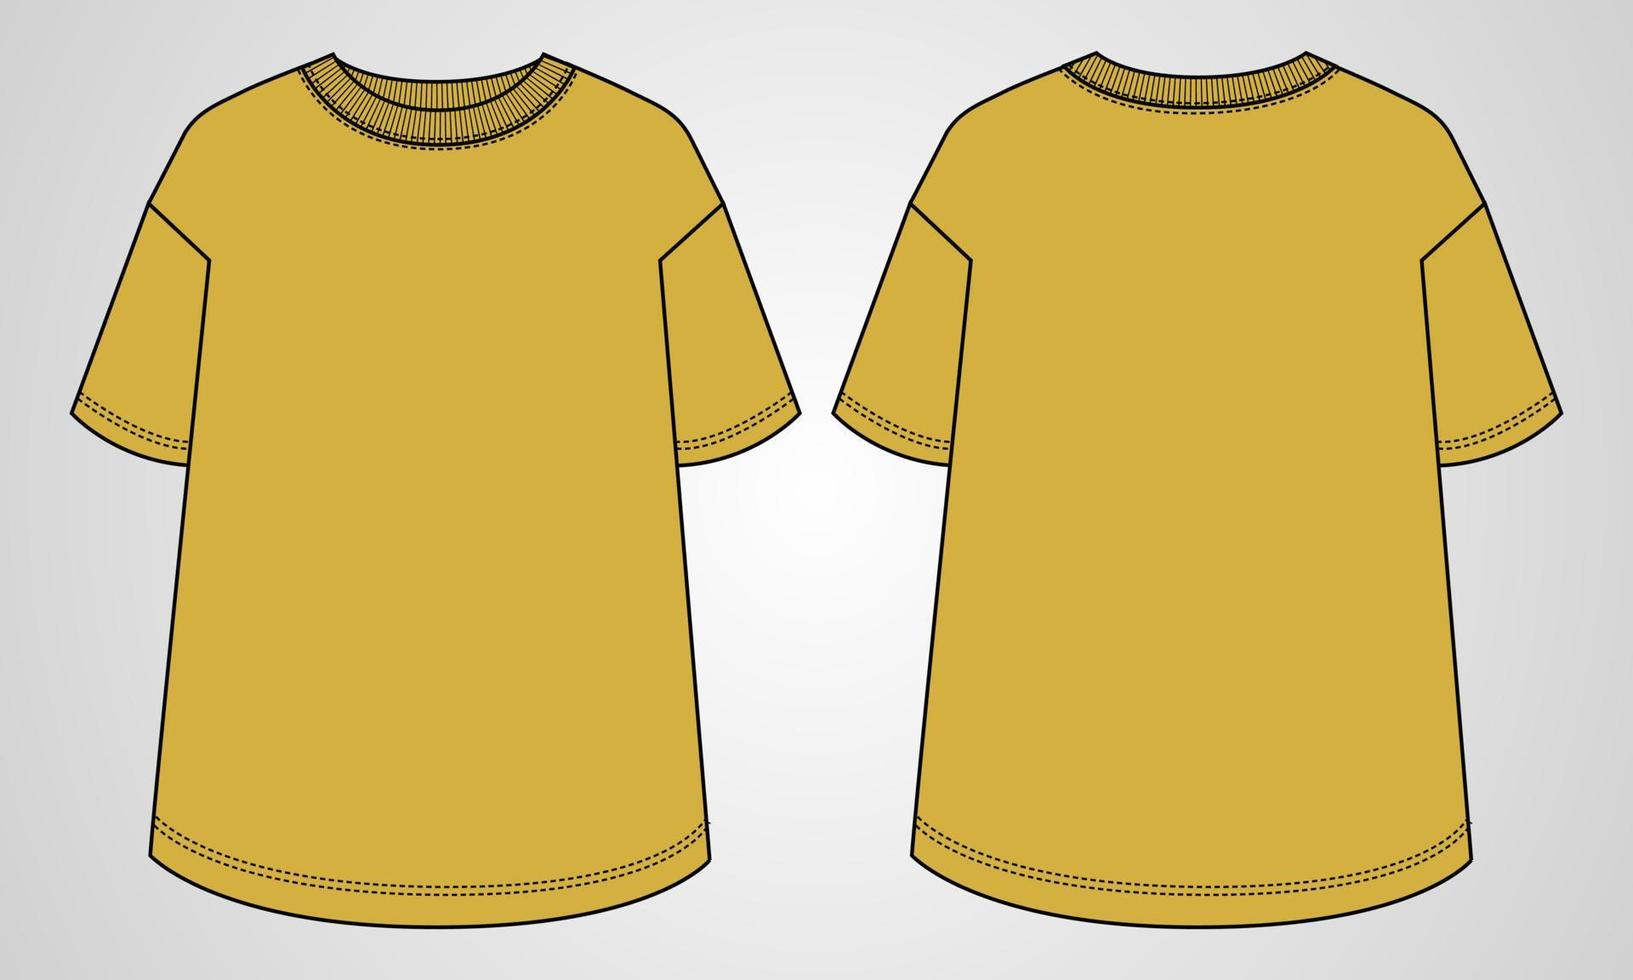 camiseta de manga corta tops planos de moda técnica plantilla de ilustración vectorial para damas vector